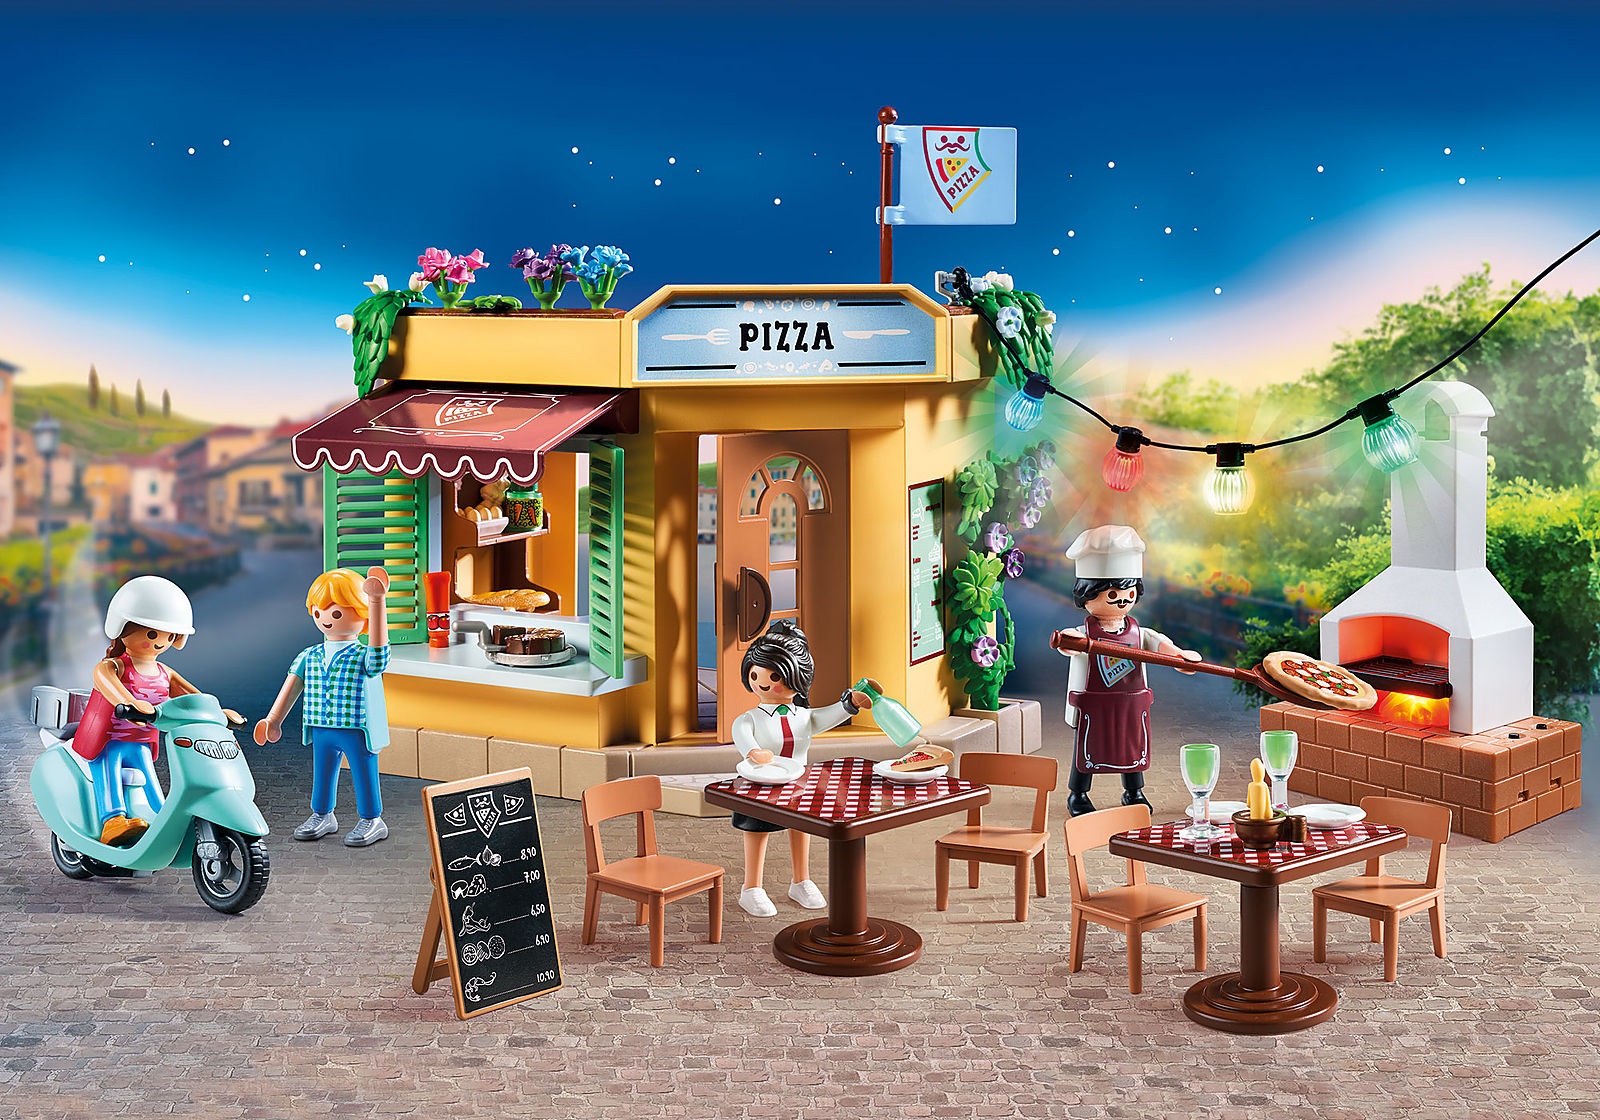 Playmobil City Life 70336 Pizzeria z ogródkiem restauracyjnym